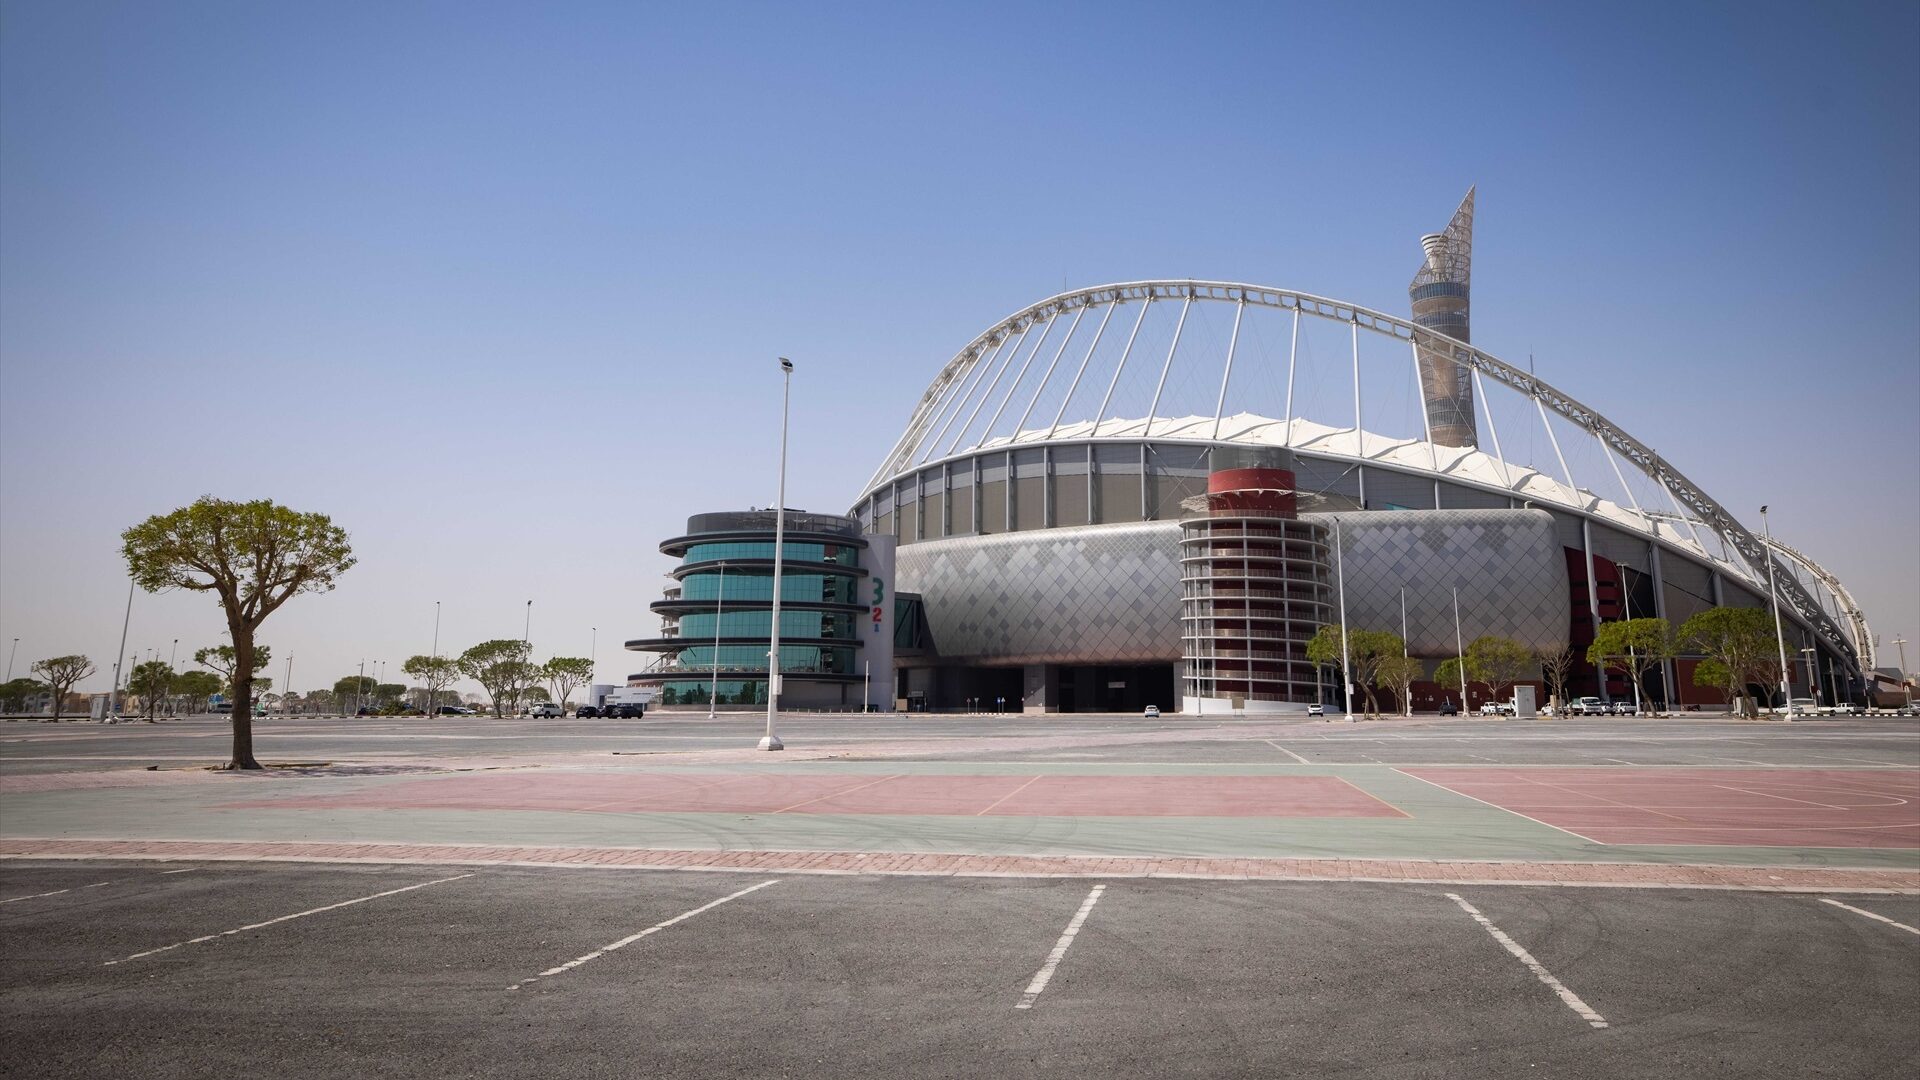 Ceremonia de inauguración del Mundial de Qatar 2022: quién actuará y quién ha dicho no